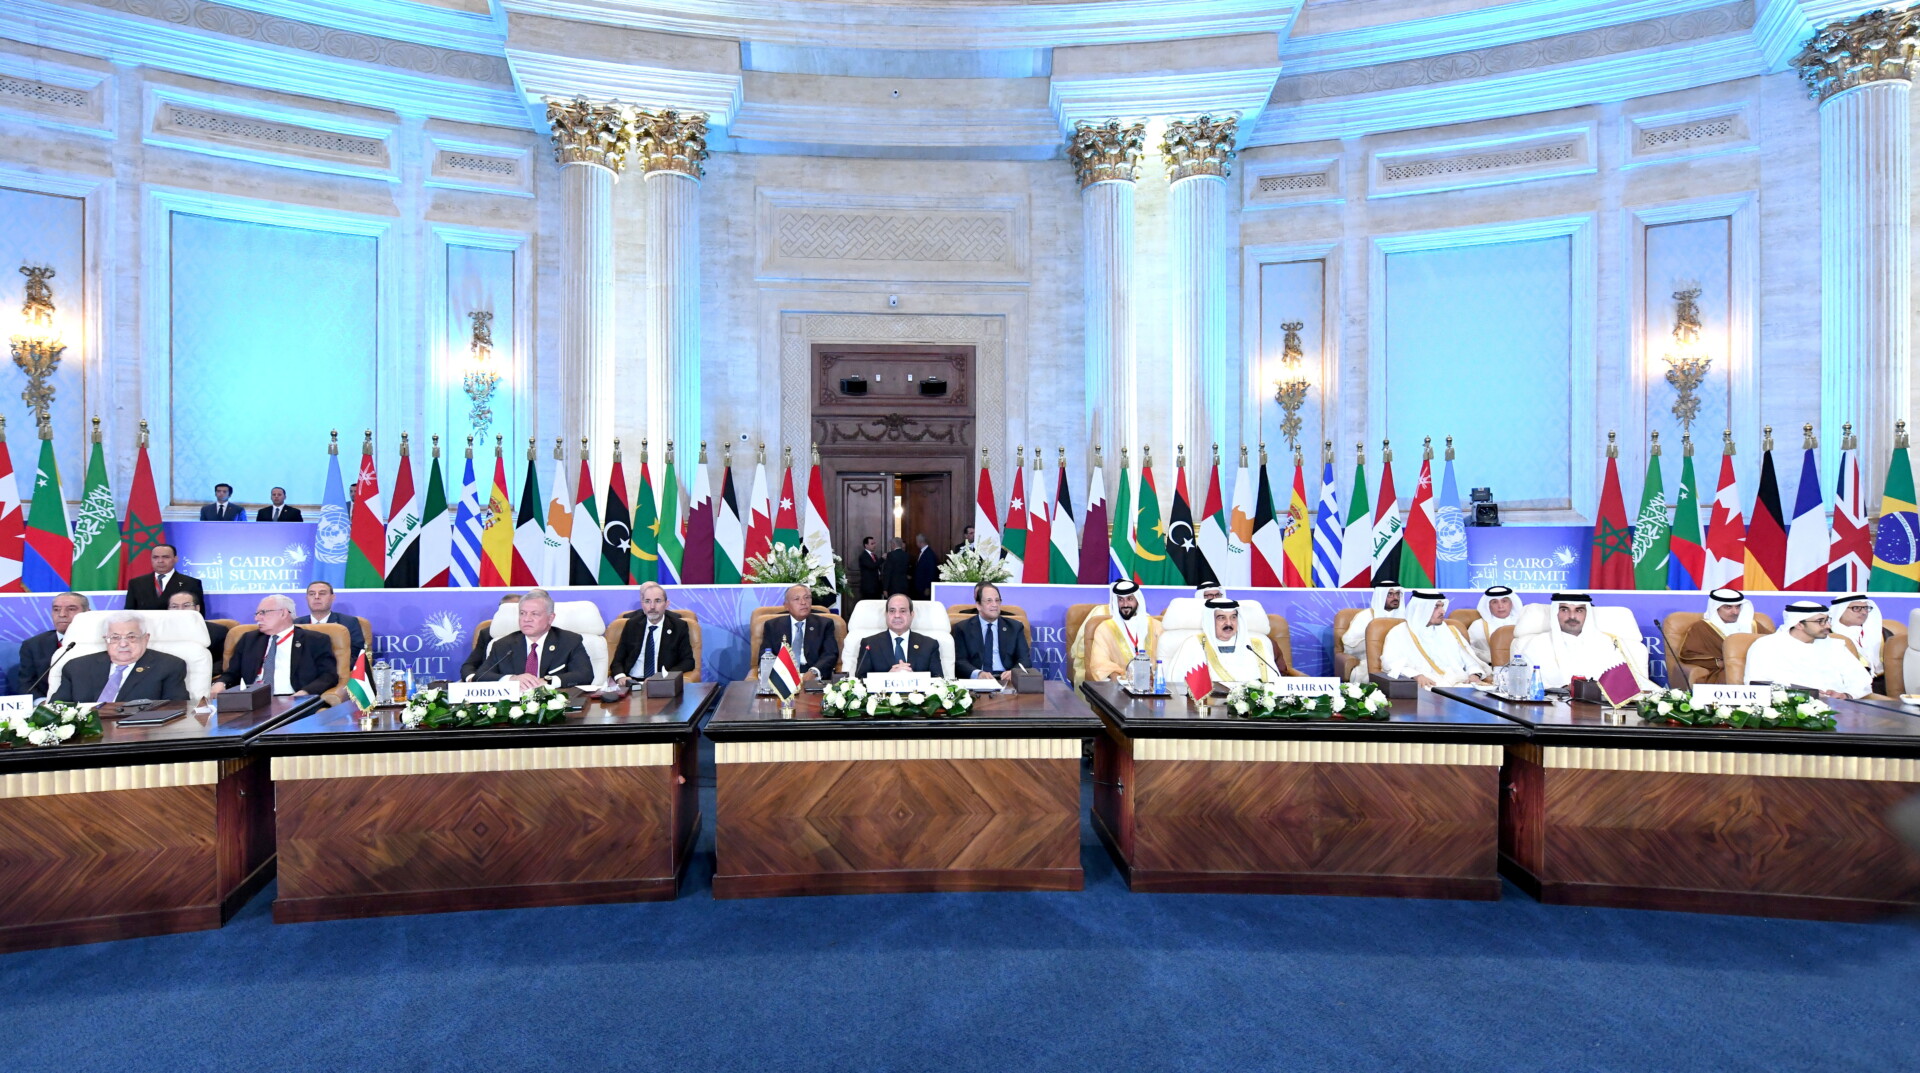 «Σύνοδος Κορυφής του Καΐρου για την Ειρήνη» (Cairo Summit for Peace) για τις εξελίξεις στη Μέση Ανατολή © EPA/EGYPTIAN PRESIDENTIAL OFFICE